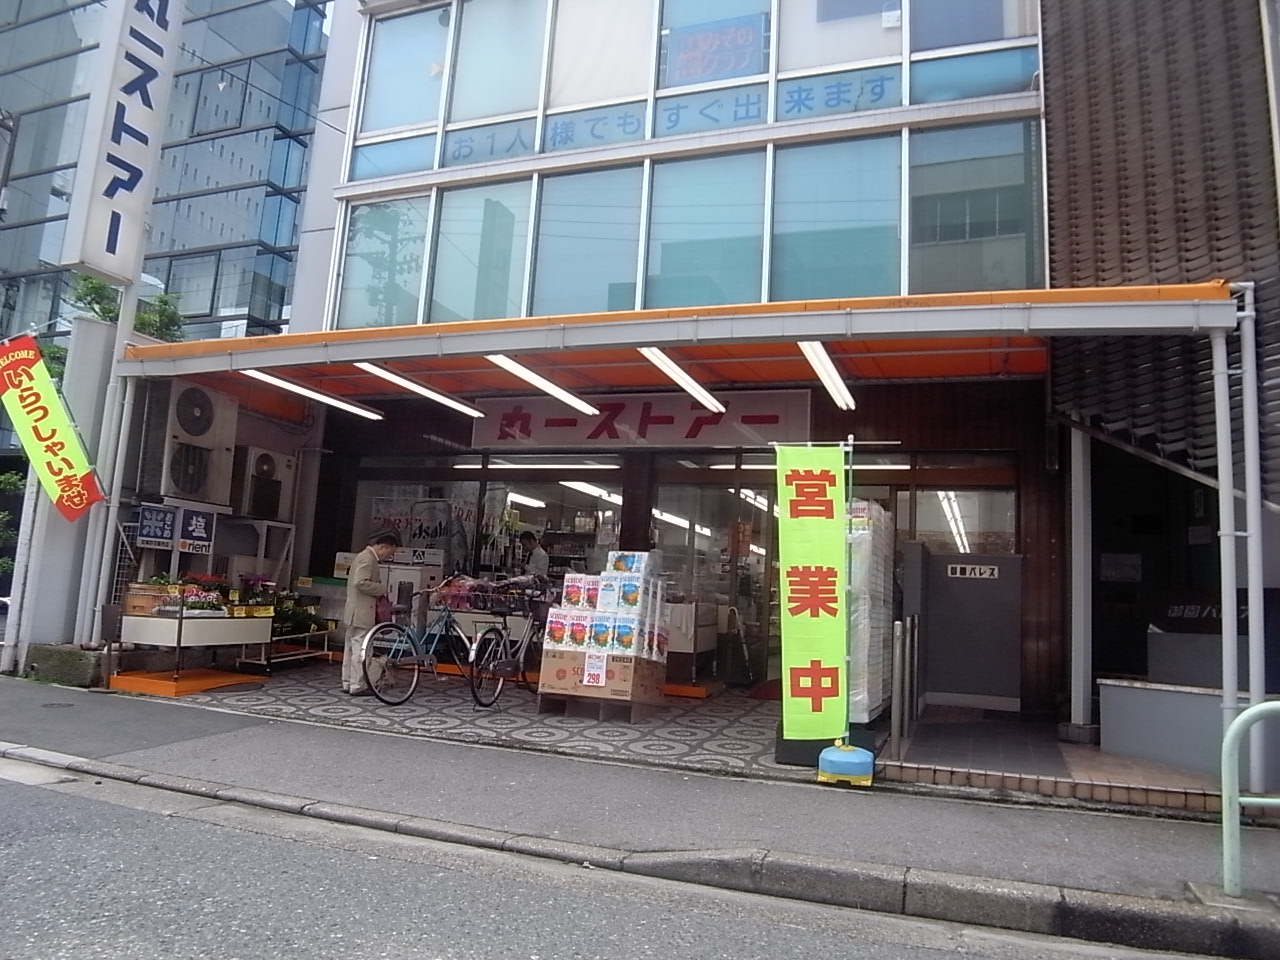 Supermarket. 50m to Maruichi store Misono store (Super)